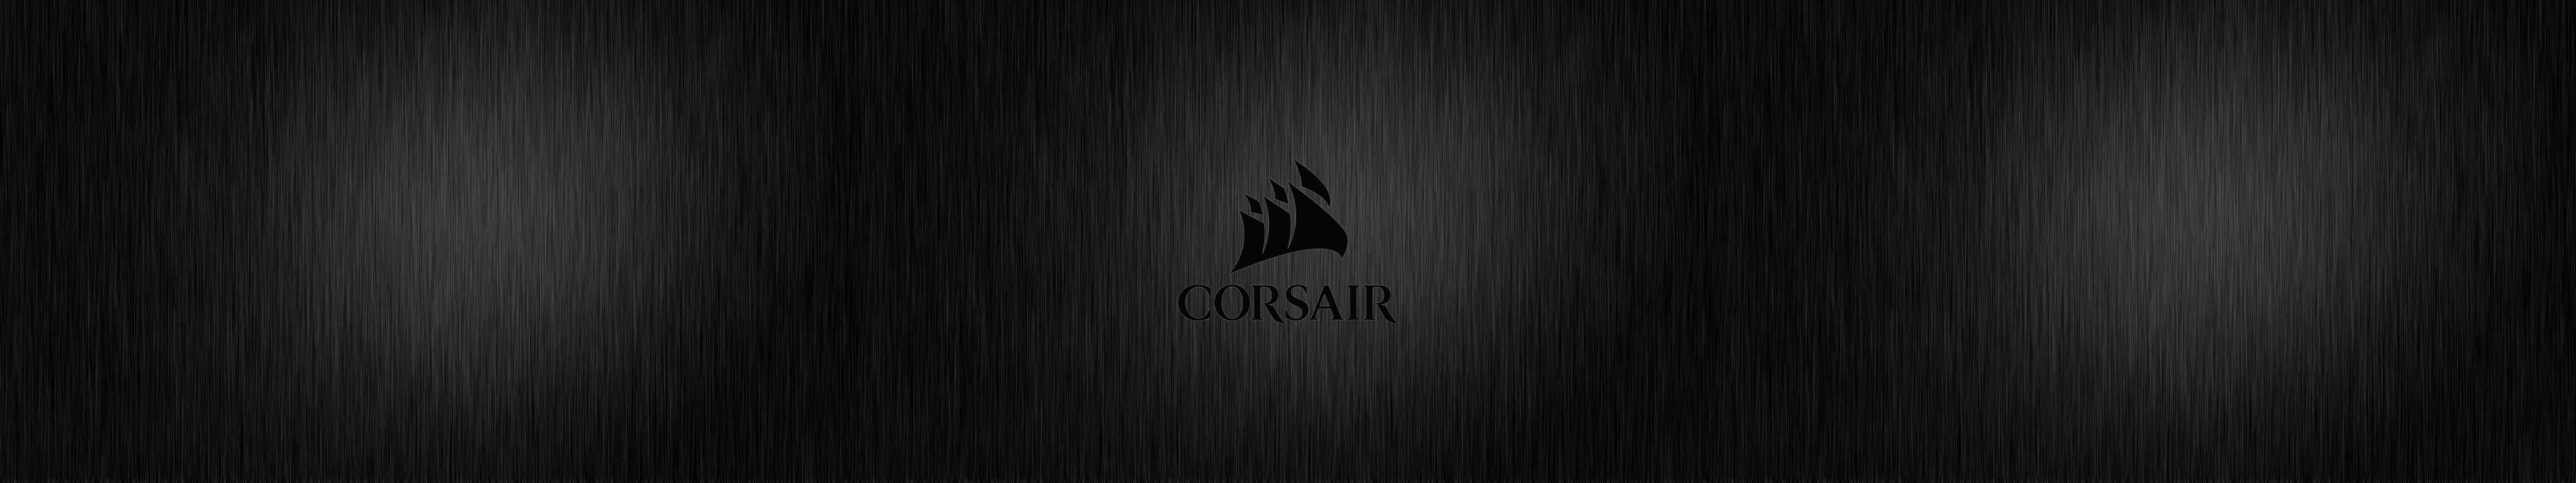 Højtydendespil Med Corsair.